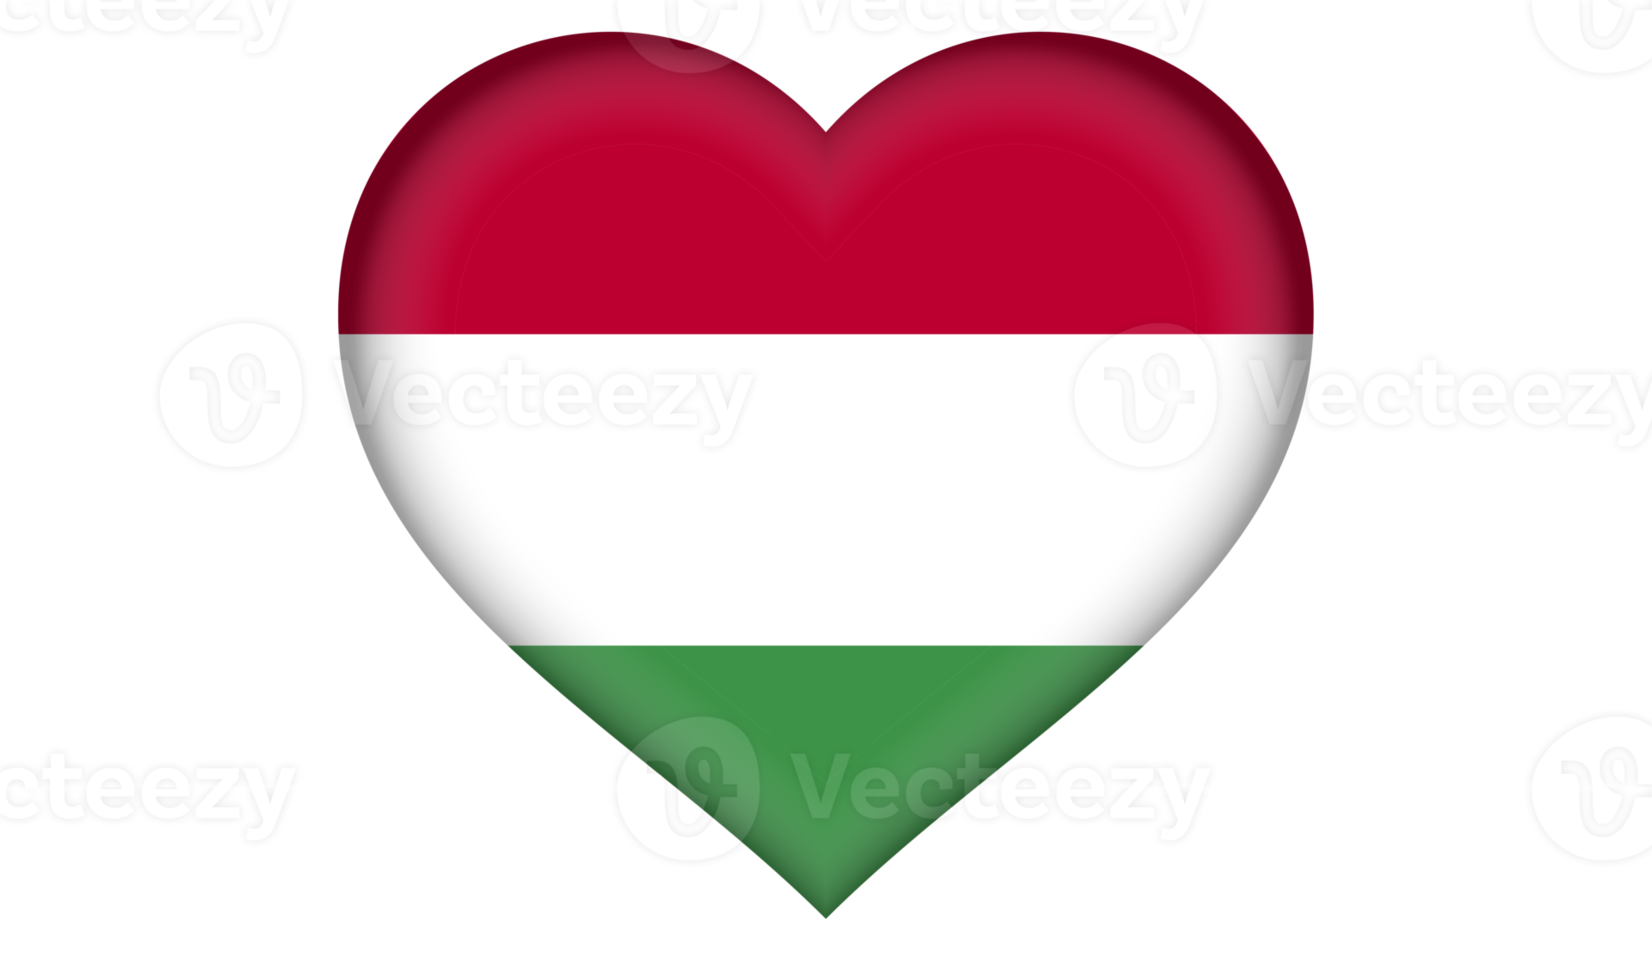 Hongarije vlag icoon in de het formulier van een hart png